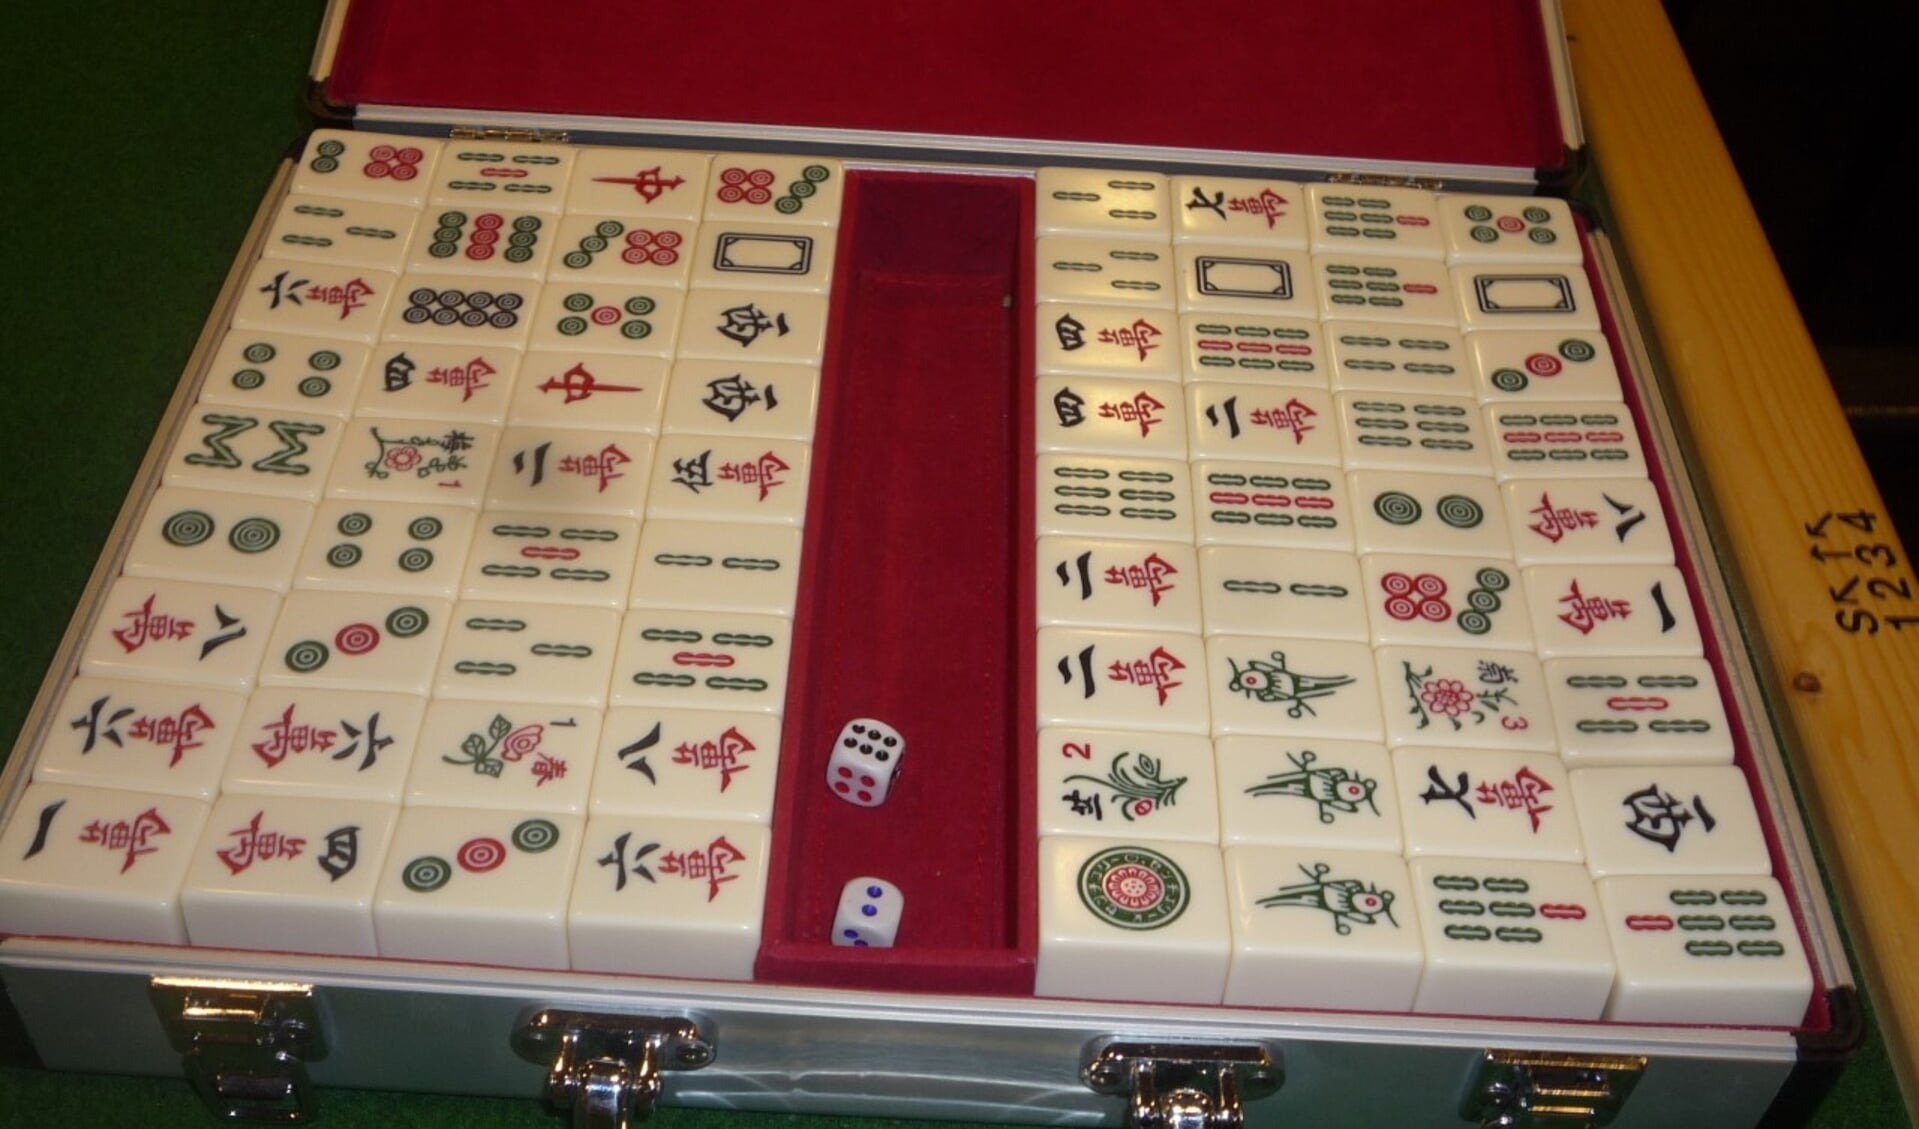 Mahjong Spellen spelen op MAHJONG SPEL.co